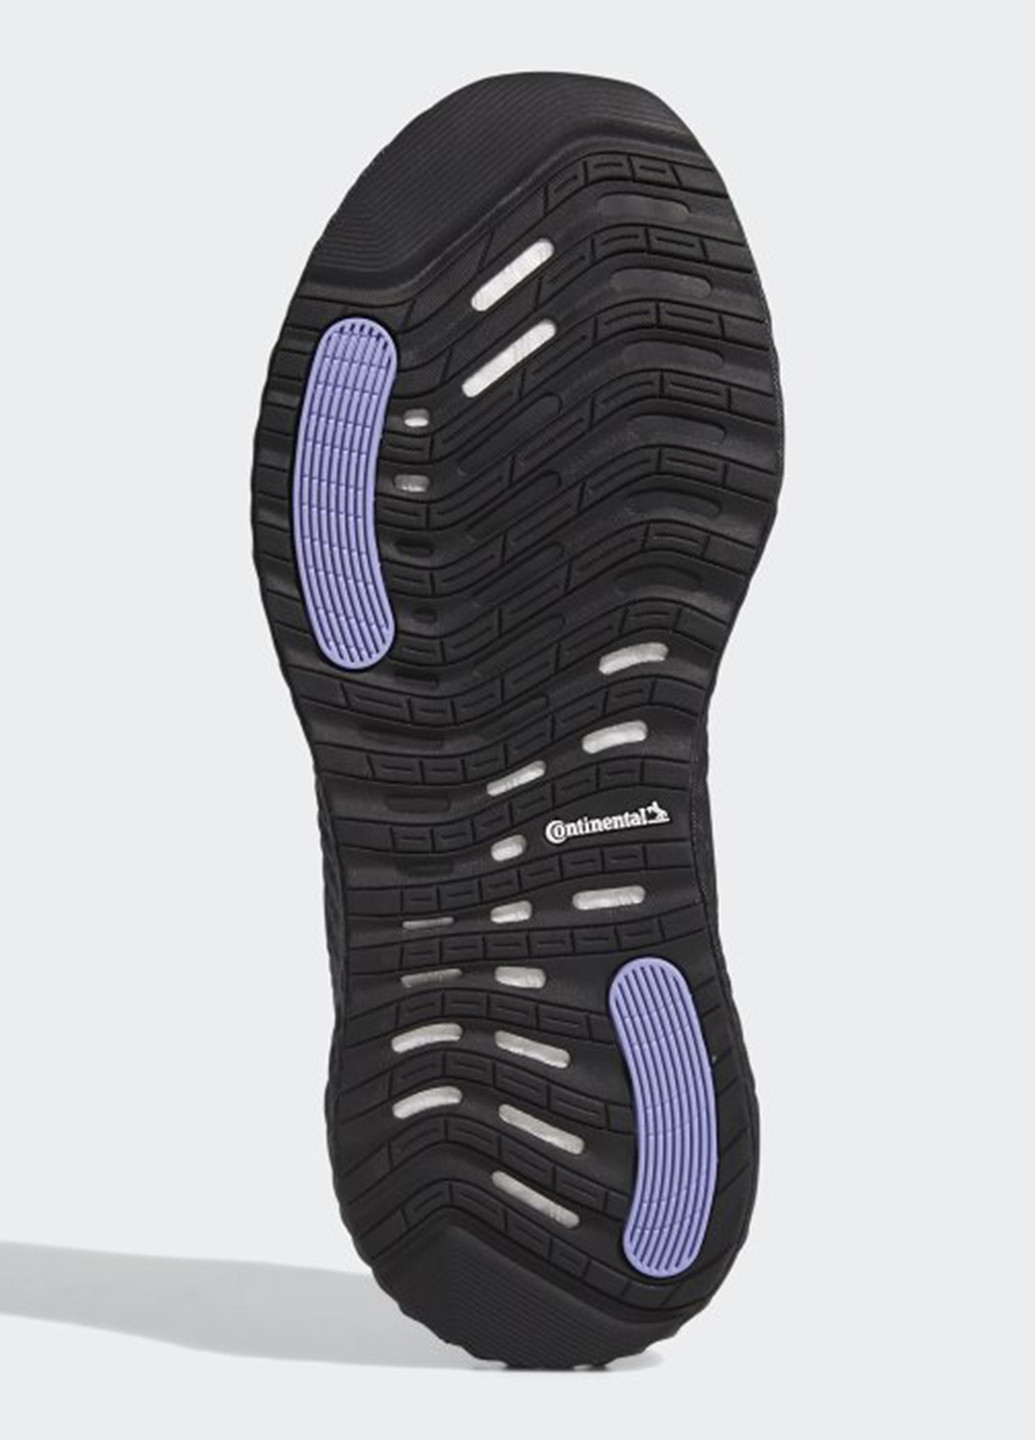 Фиолетовые всесезонные кроссовки adidas